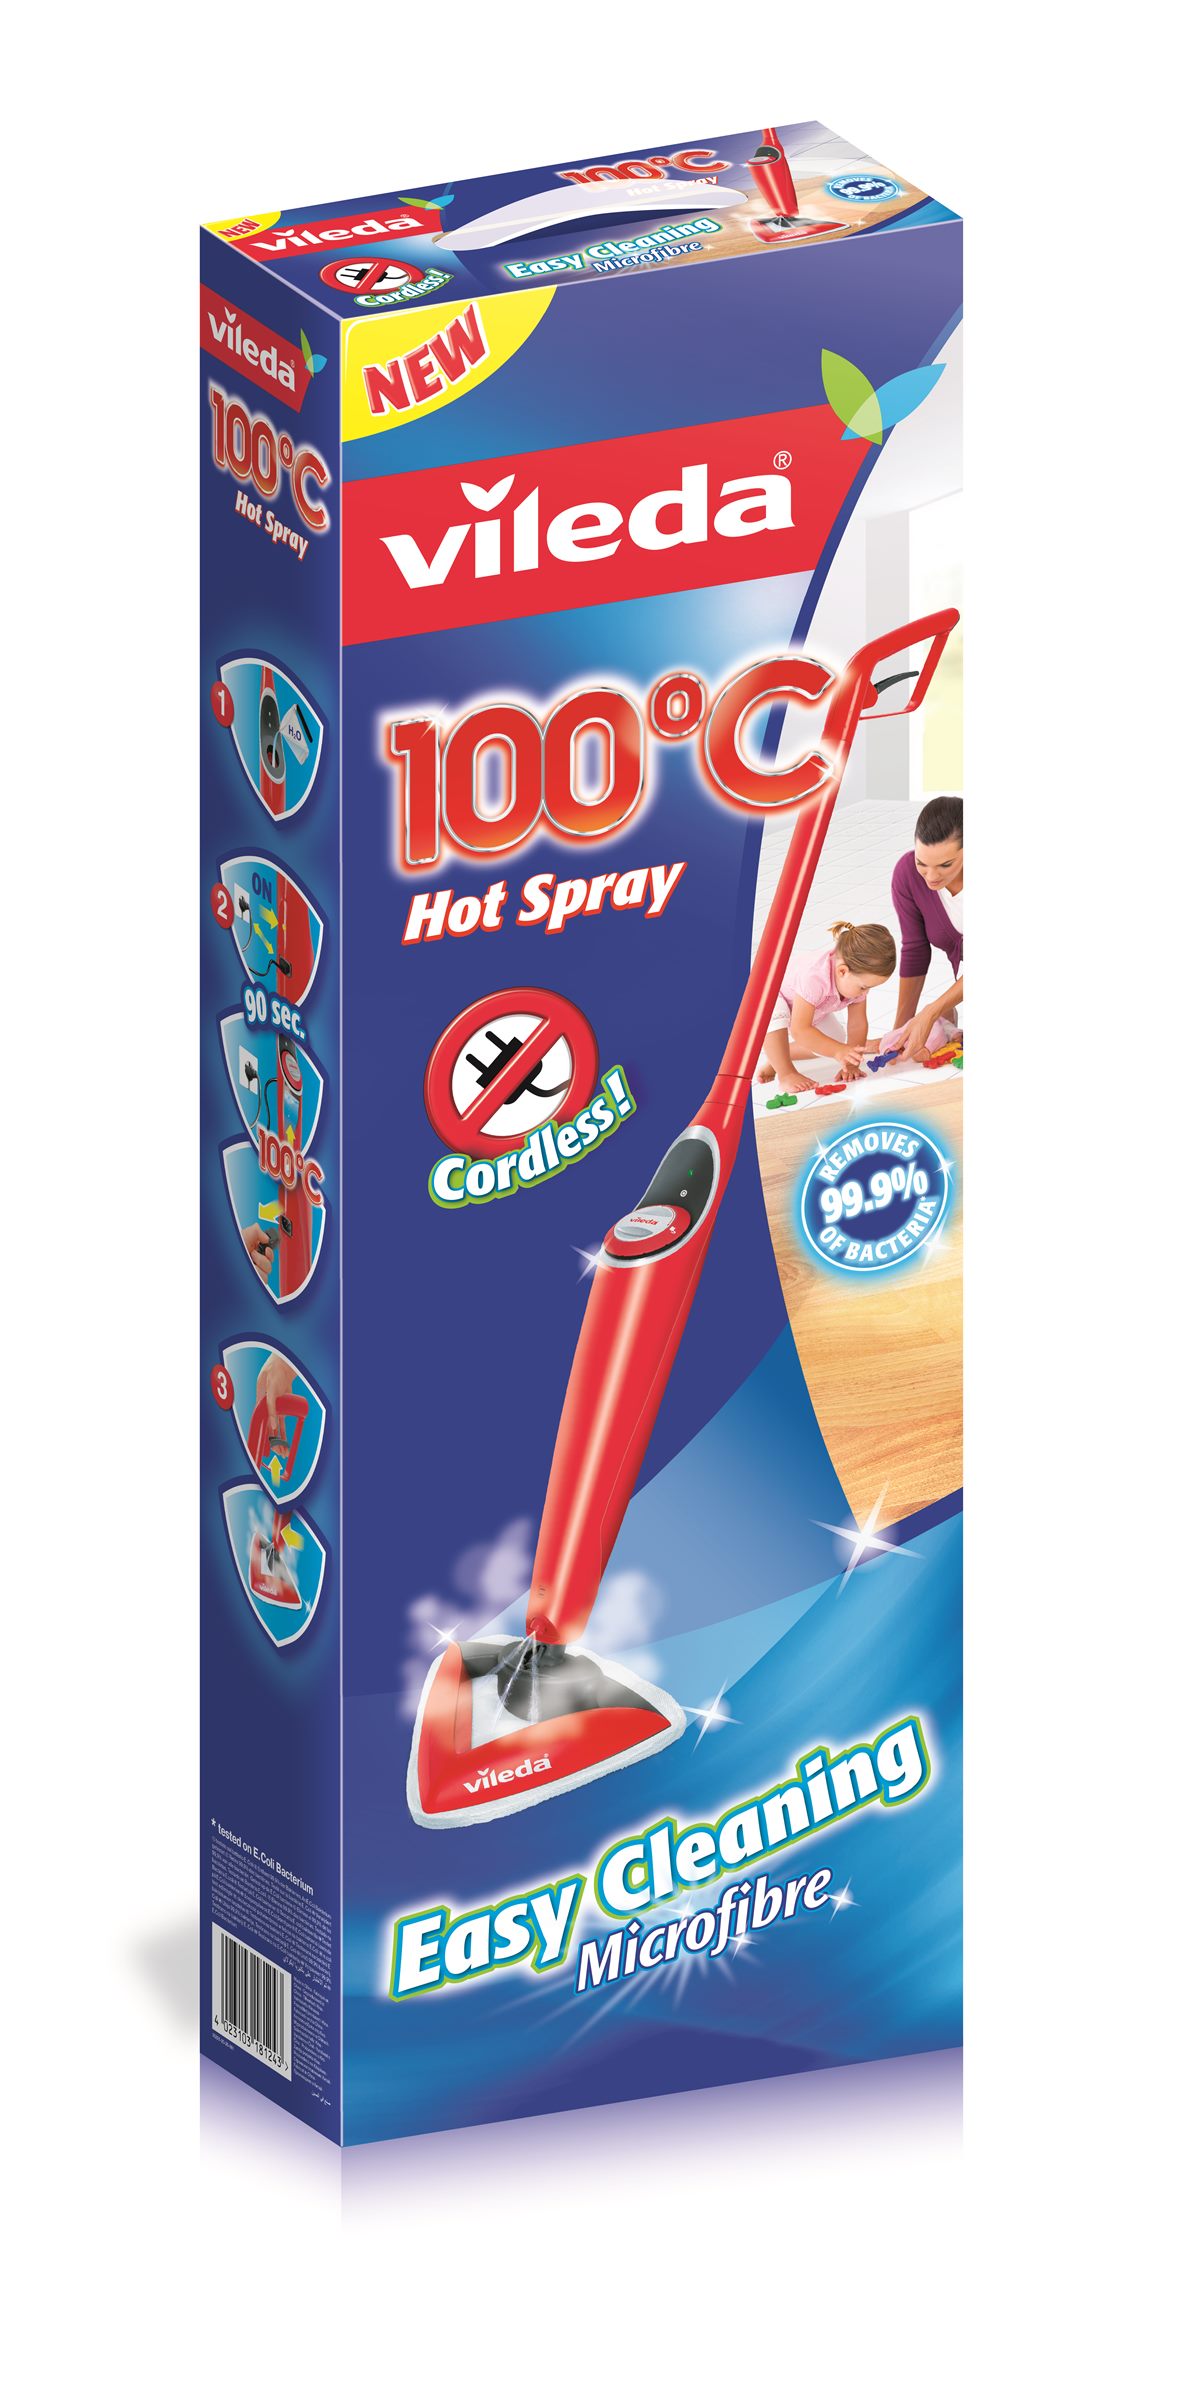 Hot Spray